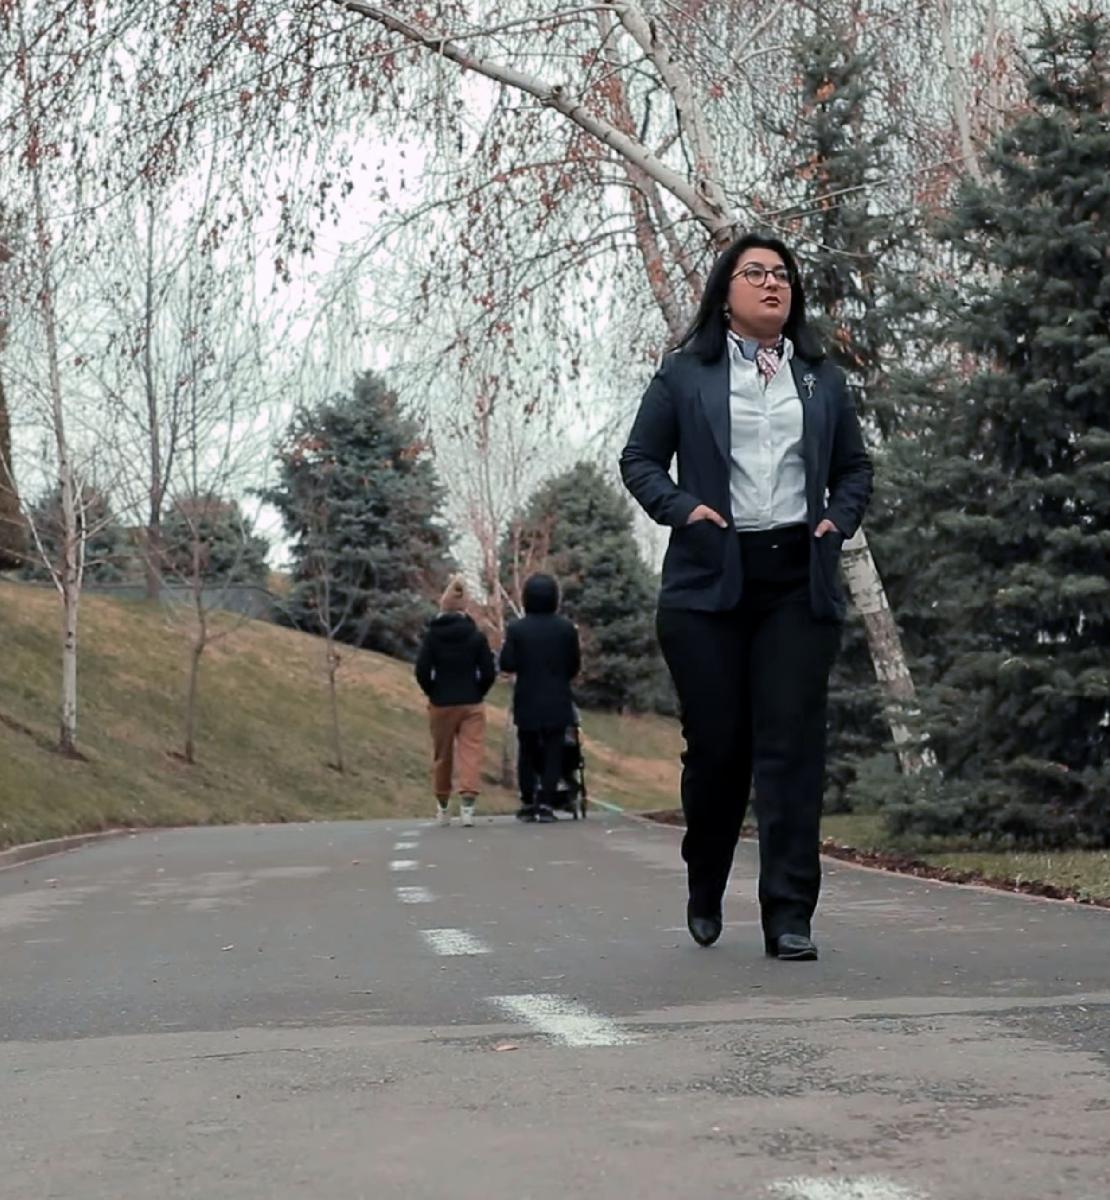 阿基达-莫基罗娃笔直地走在公园的路上，而两个人的背影，其中一个推着婴儿车从她身边走过。